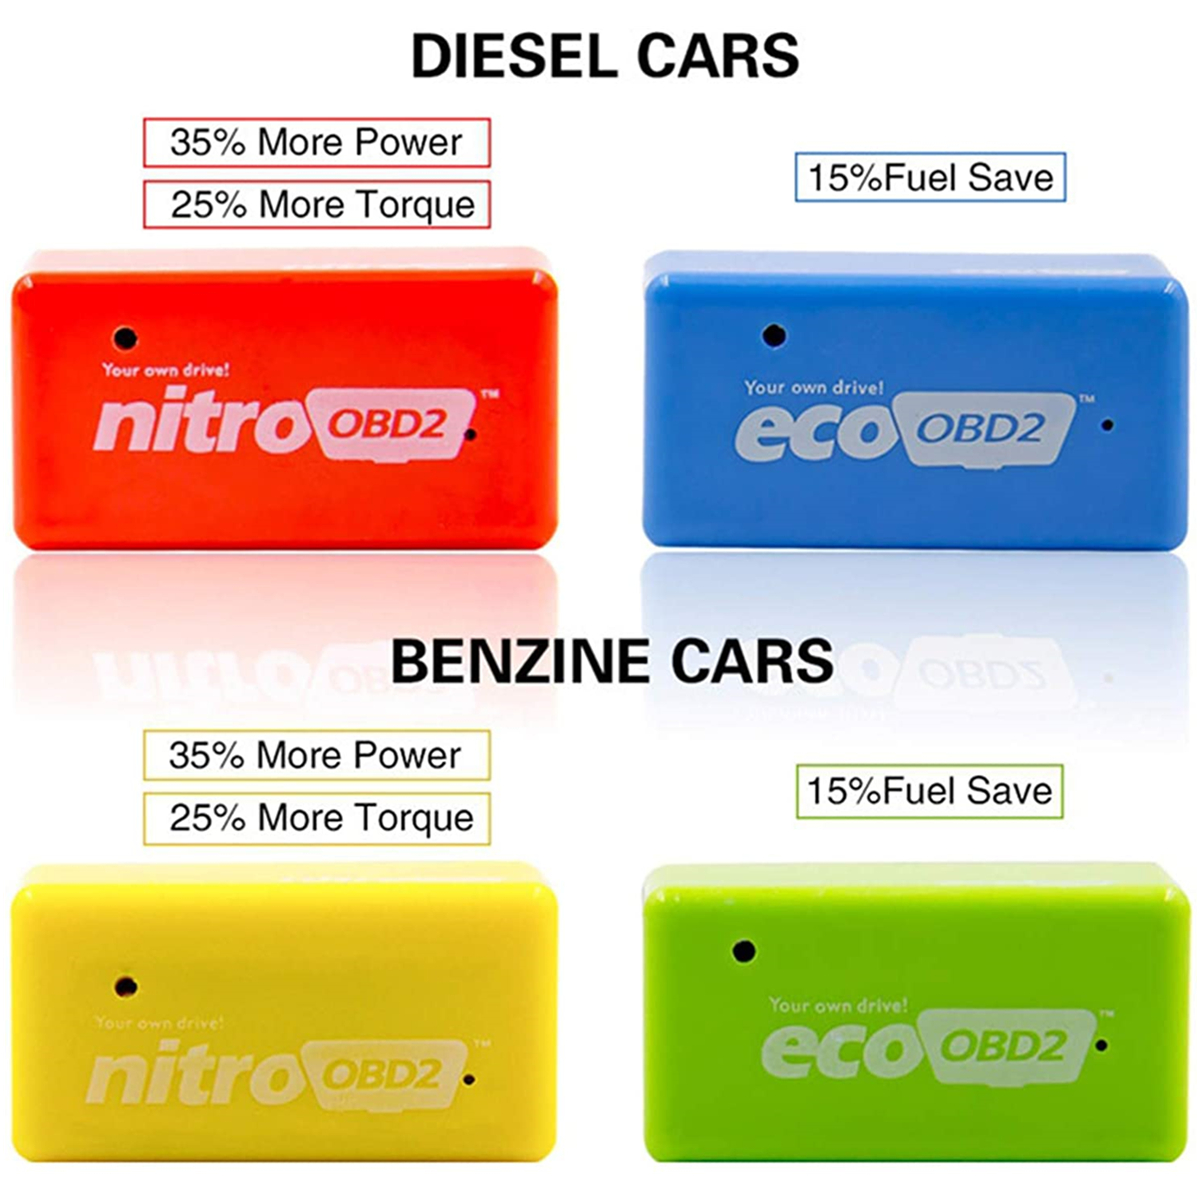 15% Sprit sparen Eco Obd2 Chip Tuning Box Benzine Ecoobd2 Kraftstoff sparen  Nitroobd2 Mehr Leistung Nitro Obd2 Benzin Ping